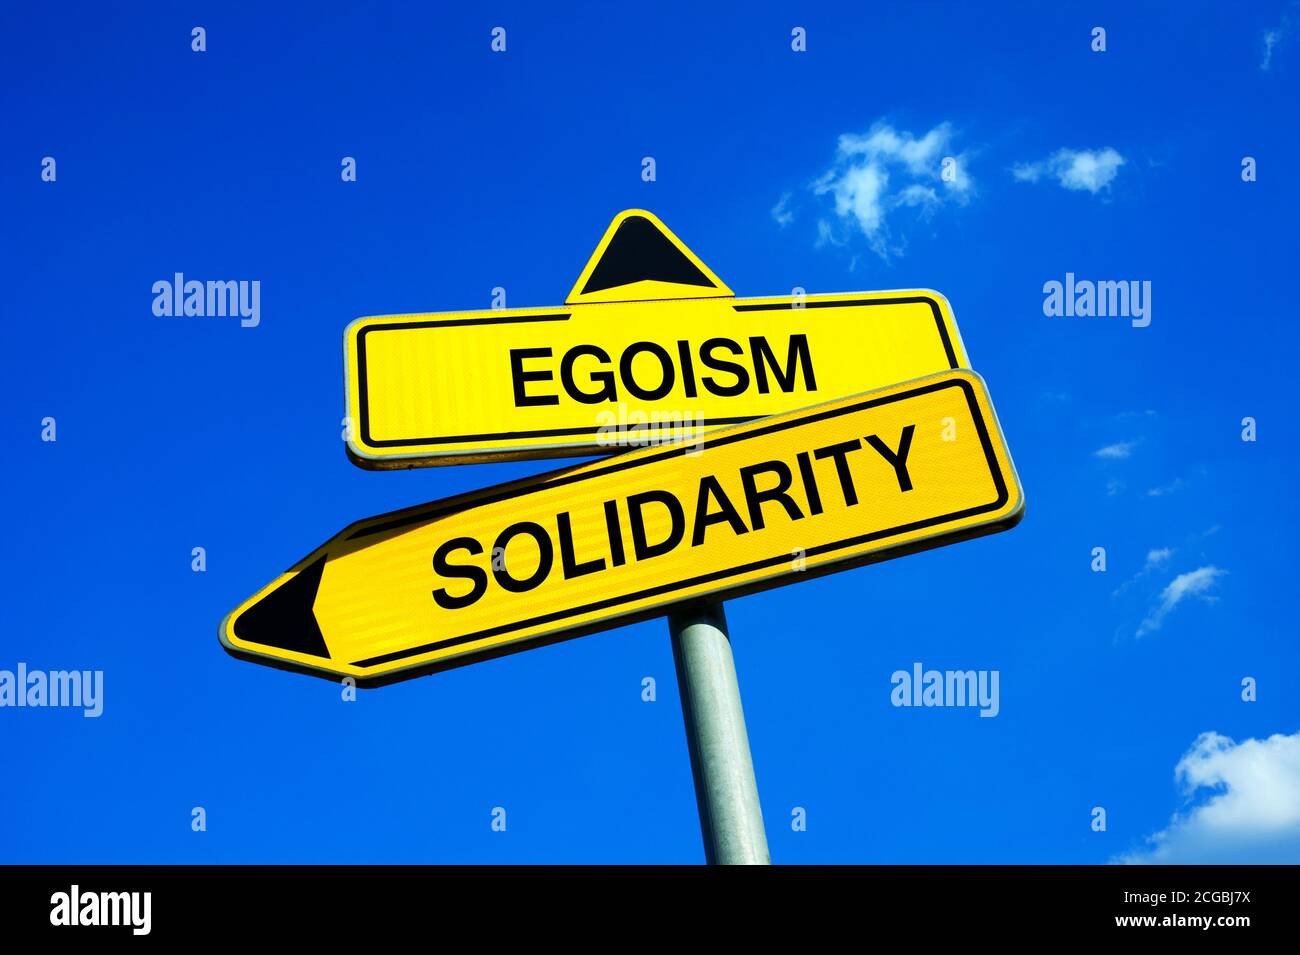 Egoismus oder Solidarität - Verkehrszeichen mit zwei Optionen - Appell zur Überwindung egoistischer Individualismus und Egozentrismus und bieten altruistische Hilfe und Hilfe. M Stockfoto